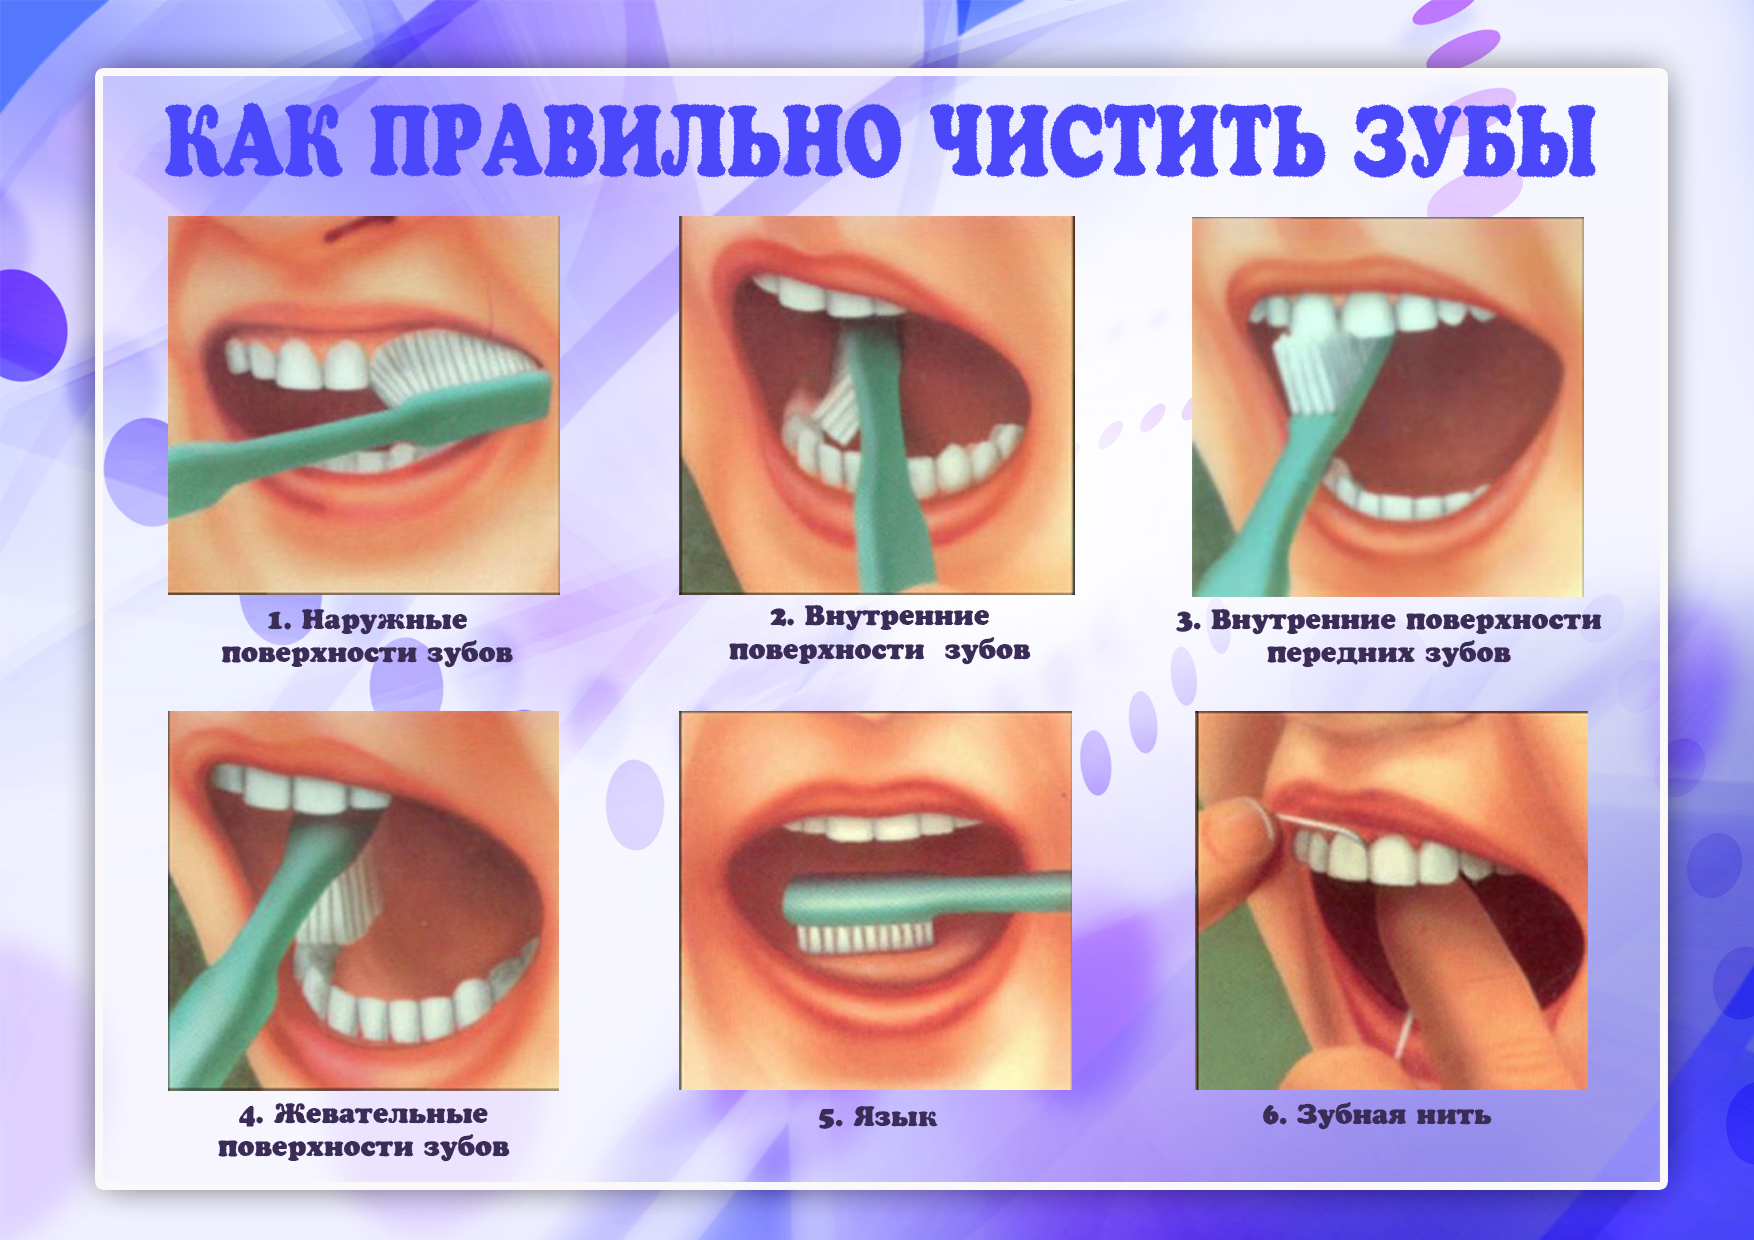 Чистка зубов вред. Как правильно чистить зубы. КВК правильно чистить зубы. Как правиночиститт зубы. Алгоритм чистки зубов.